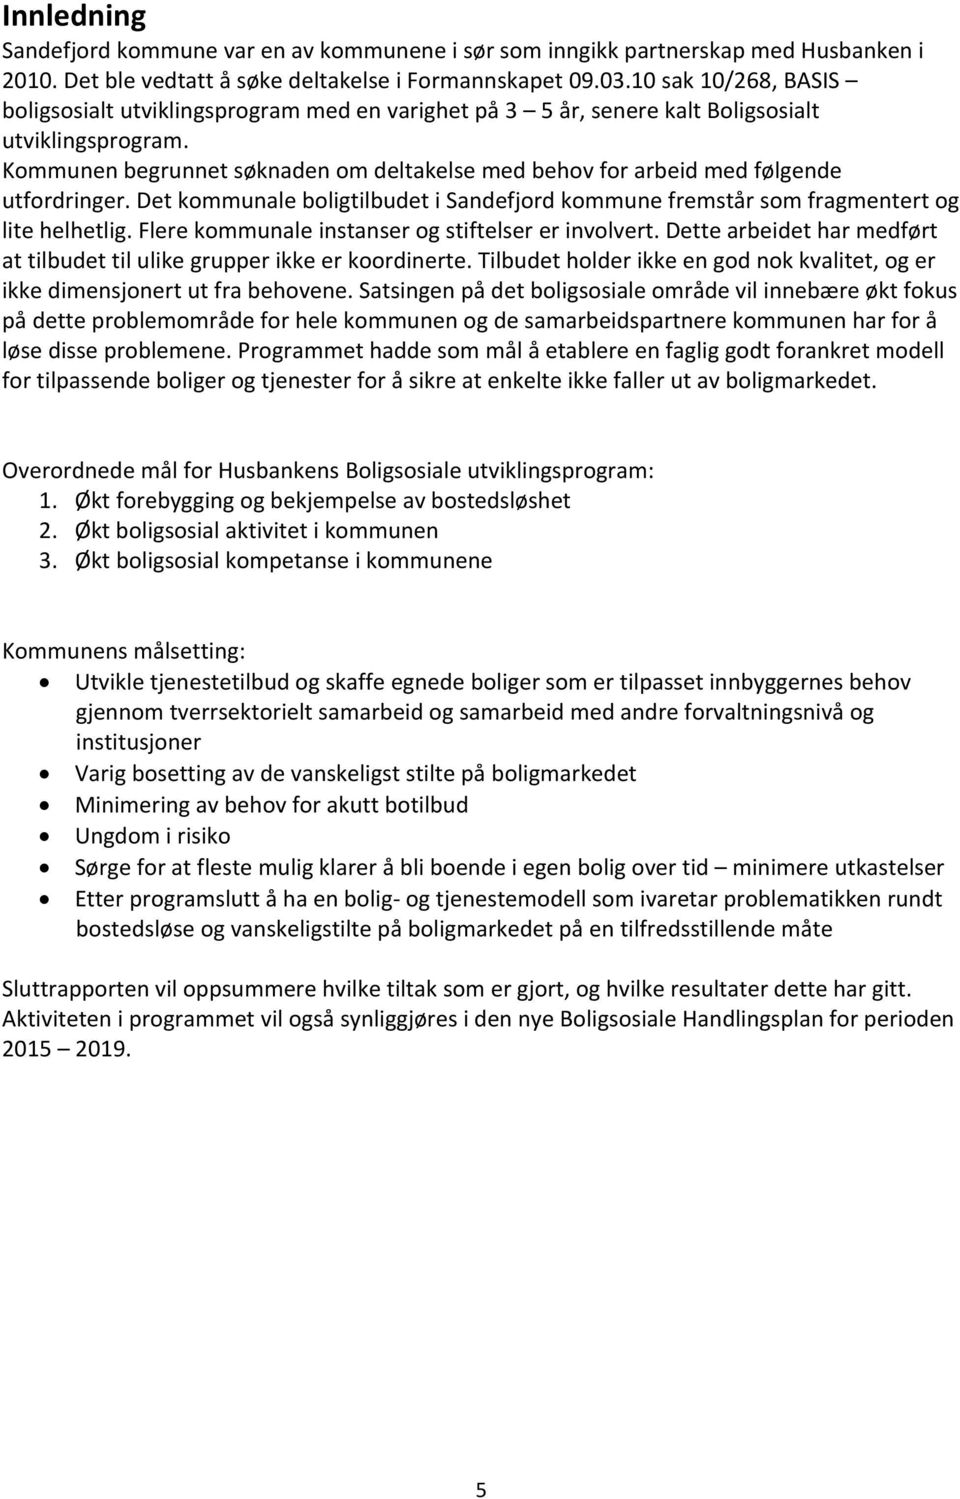 Kommunen begrunnet søknaden om deltakelse med behov for arbeid med følgende utfordringer. Det kommunale boligtilbudet i Sandefjord kommune fremstår som fragmentert og lite helhetlig.